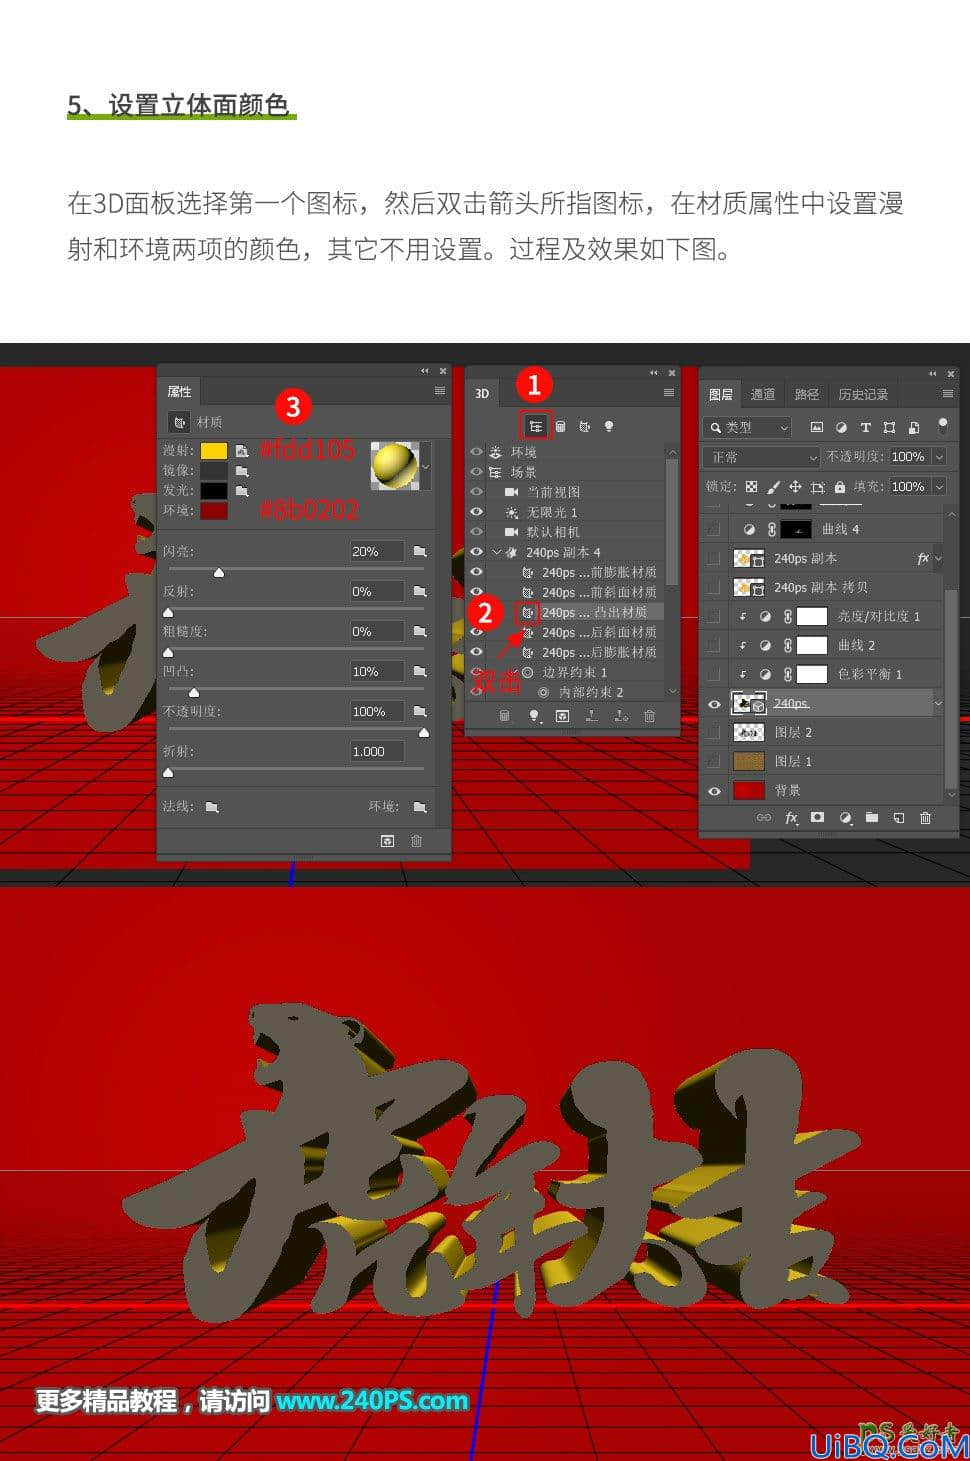 Photoshop立体金字制作教程：制作虎年生肖立体字,虎年3D立体金字。